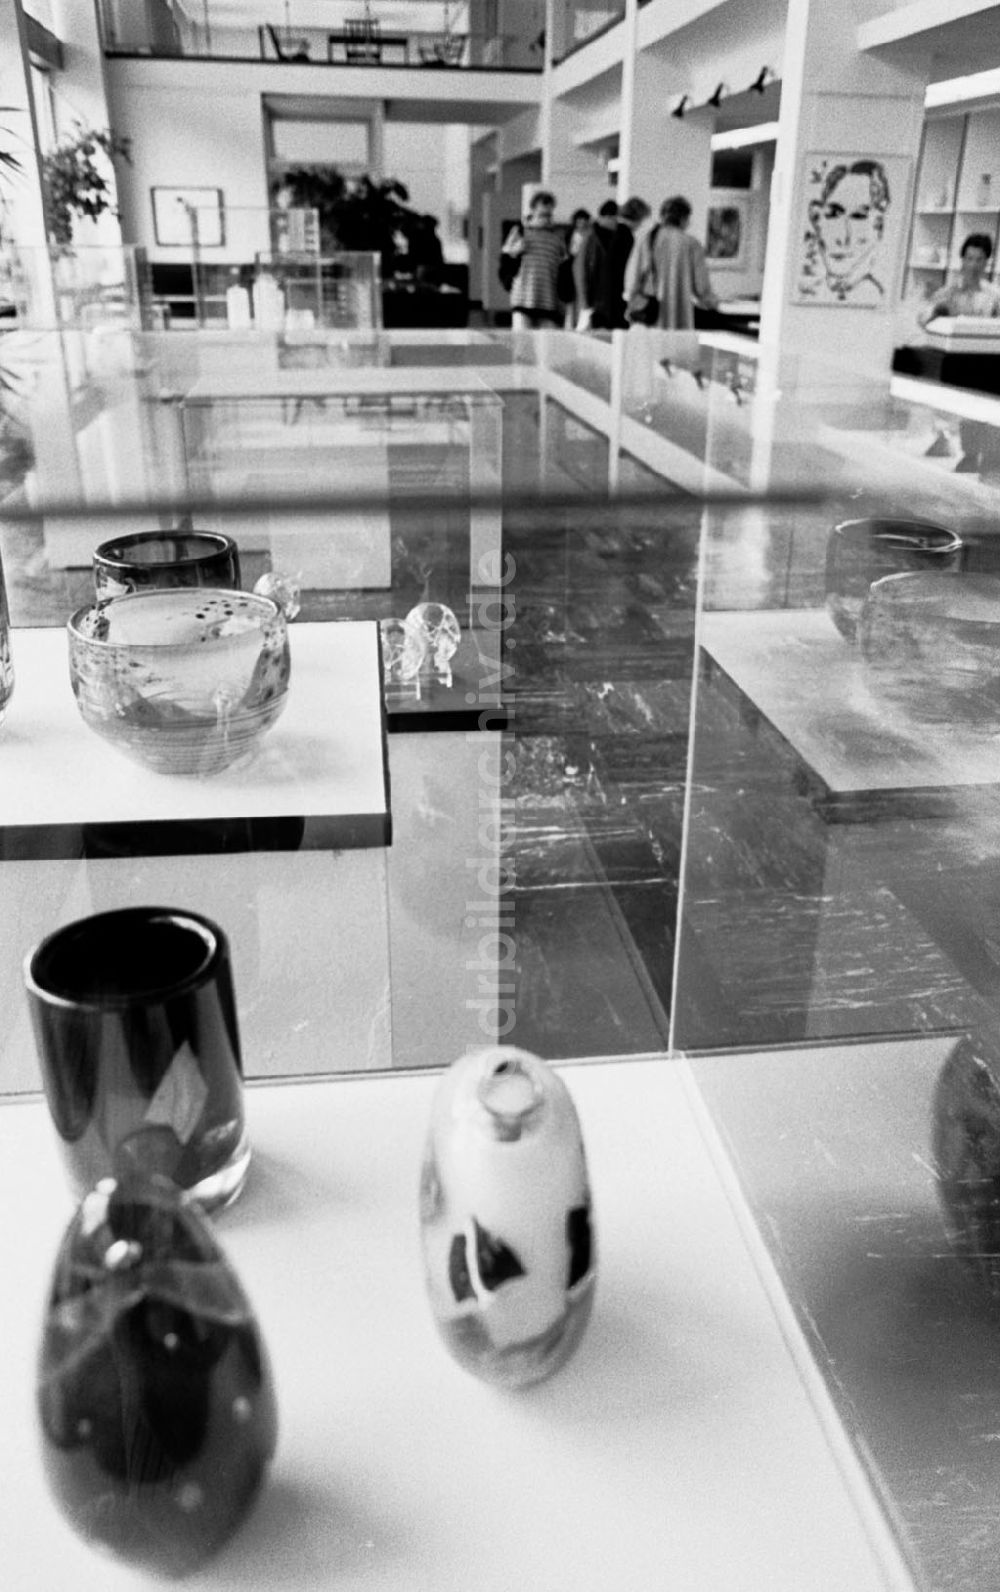 Berlin-Mitte: Mitte - Berlin Glas- und Grafikausstellung in der Gallerie Unter den Linden 11